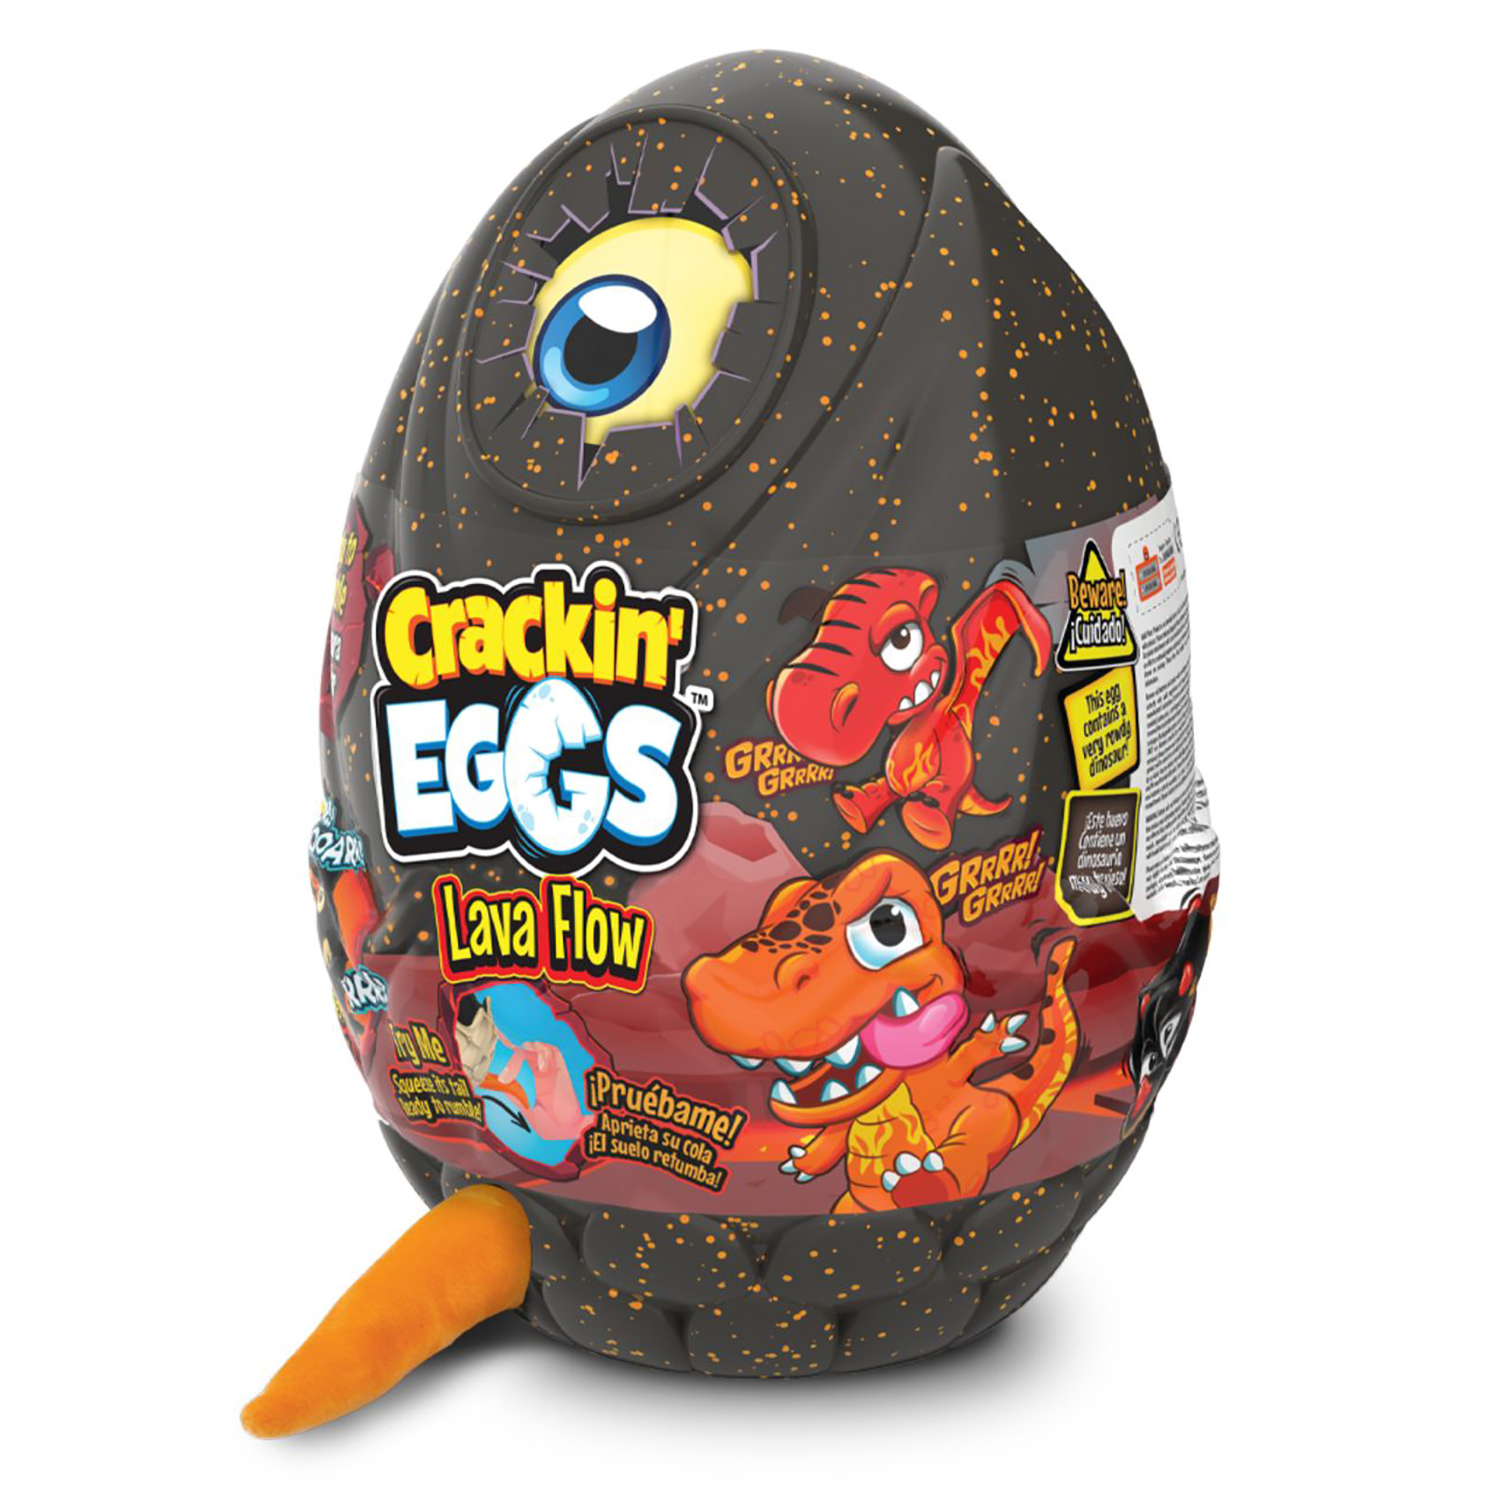 Мягкая игрушка Crackin' Eggs Динозавр оранжевый в яйце, серия Лава, 22 см игрушка динозавр синий crackin eggs в яйце серия парк динозавров sk001a 22 см голубой